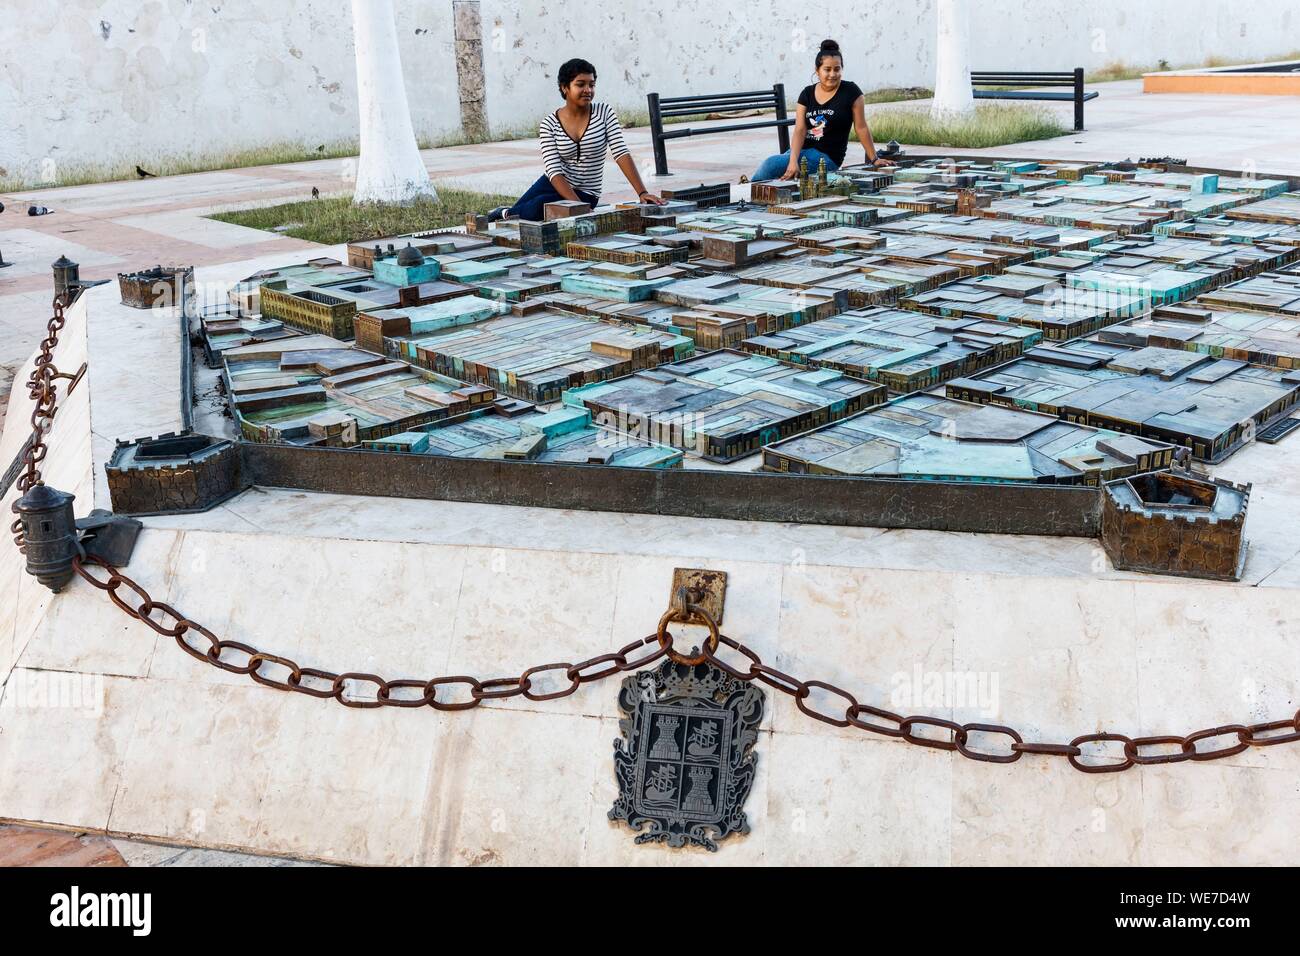 Le Mexique, l'État de Campeche, Campeche, ville fortifiée inscrite au Patrimoine Mondial de l'UNESCO, 2 filles regardant la ville immersive Banque D'Images